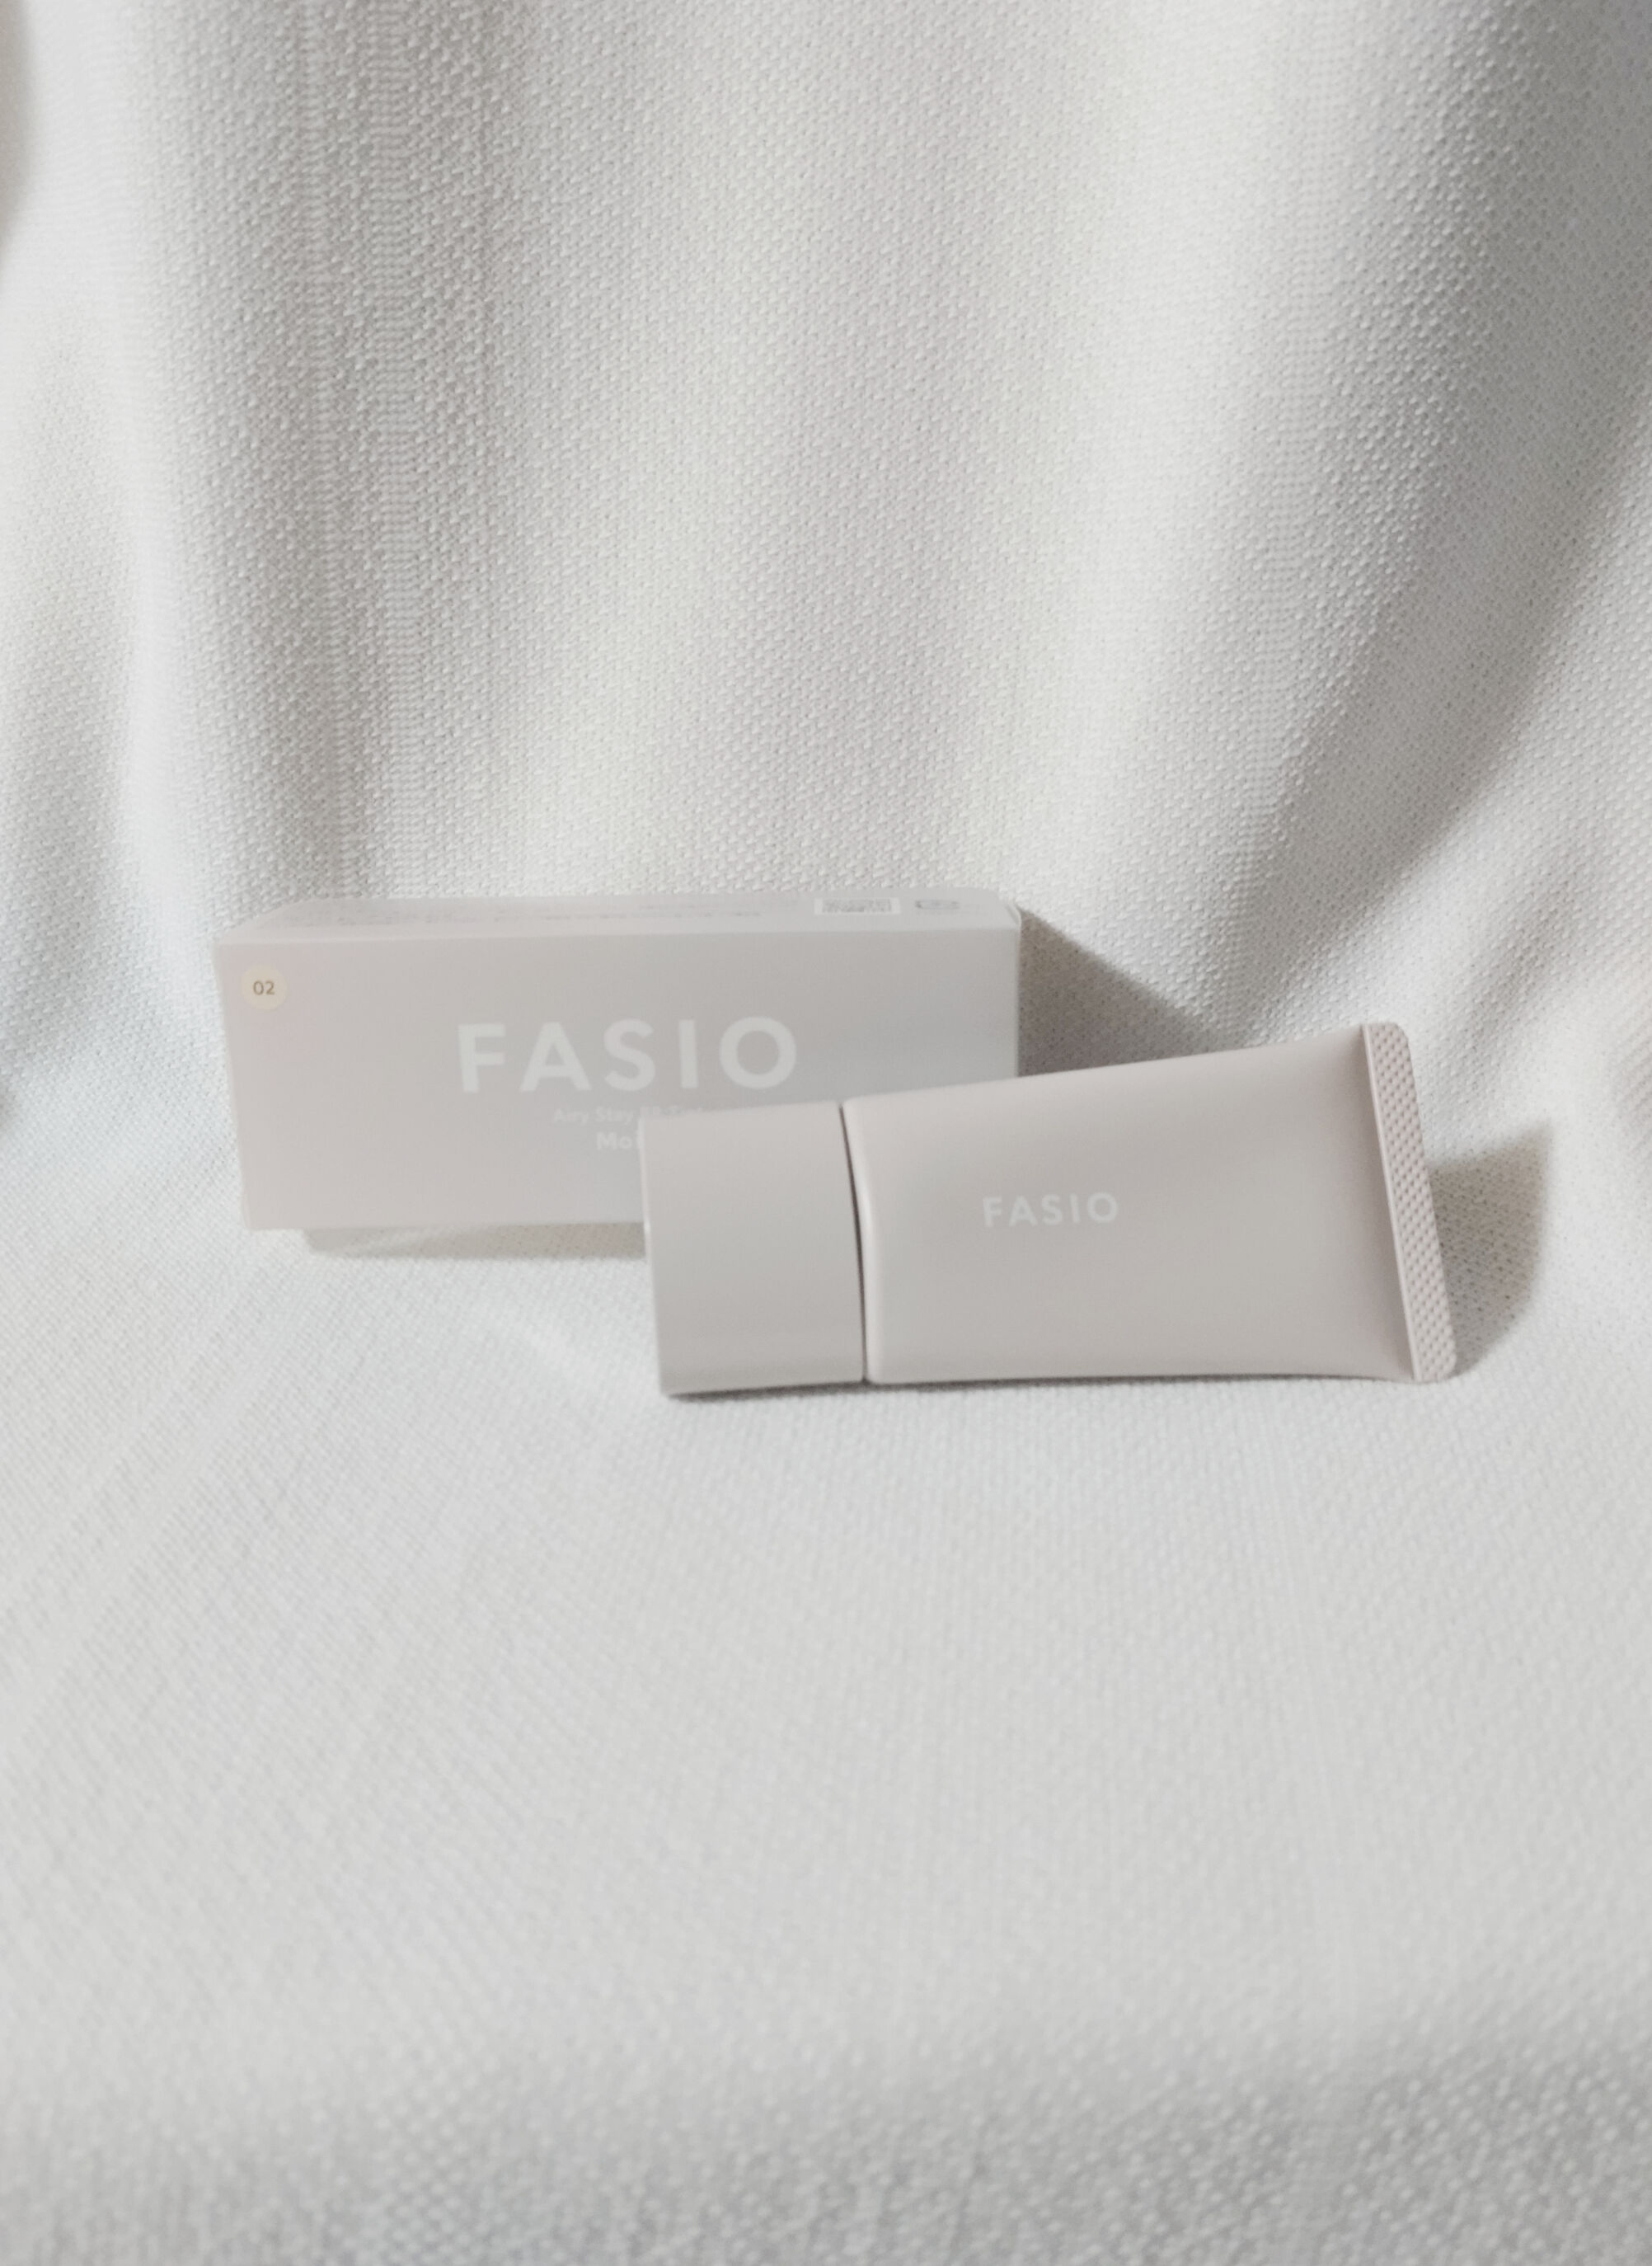 FASIO(ファシオ) エアリーステイ BB ティント モイストの良い点・メリットに関する恵未さんの口コミ画像2